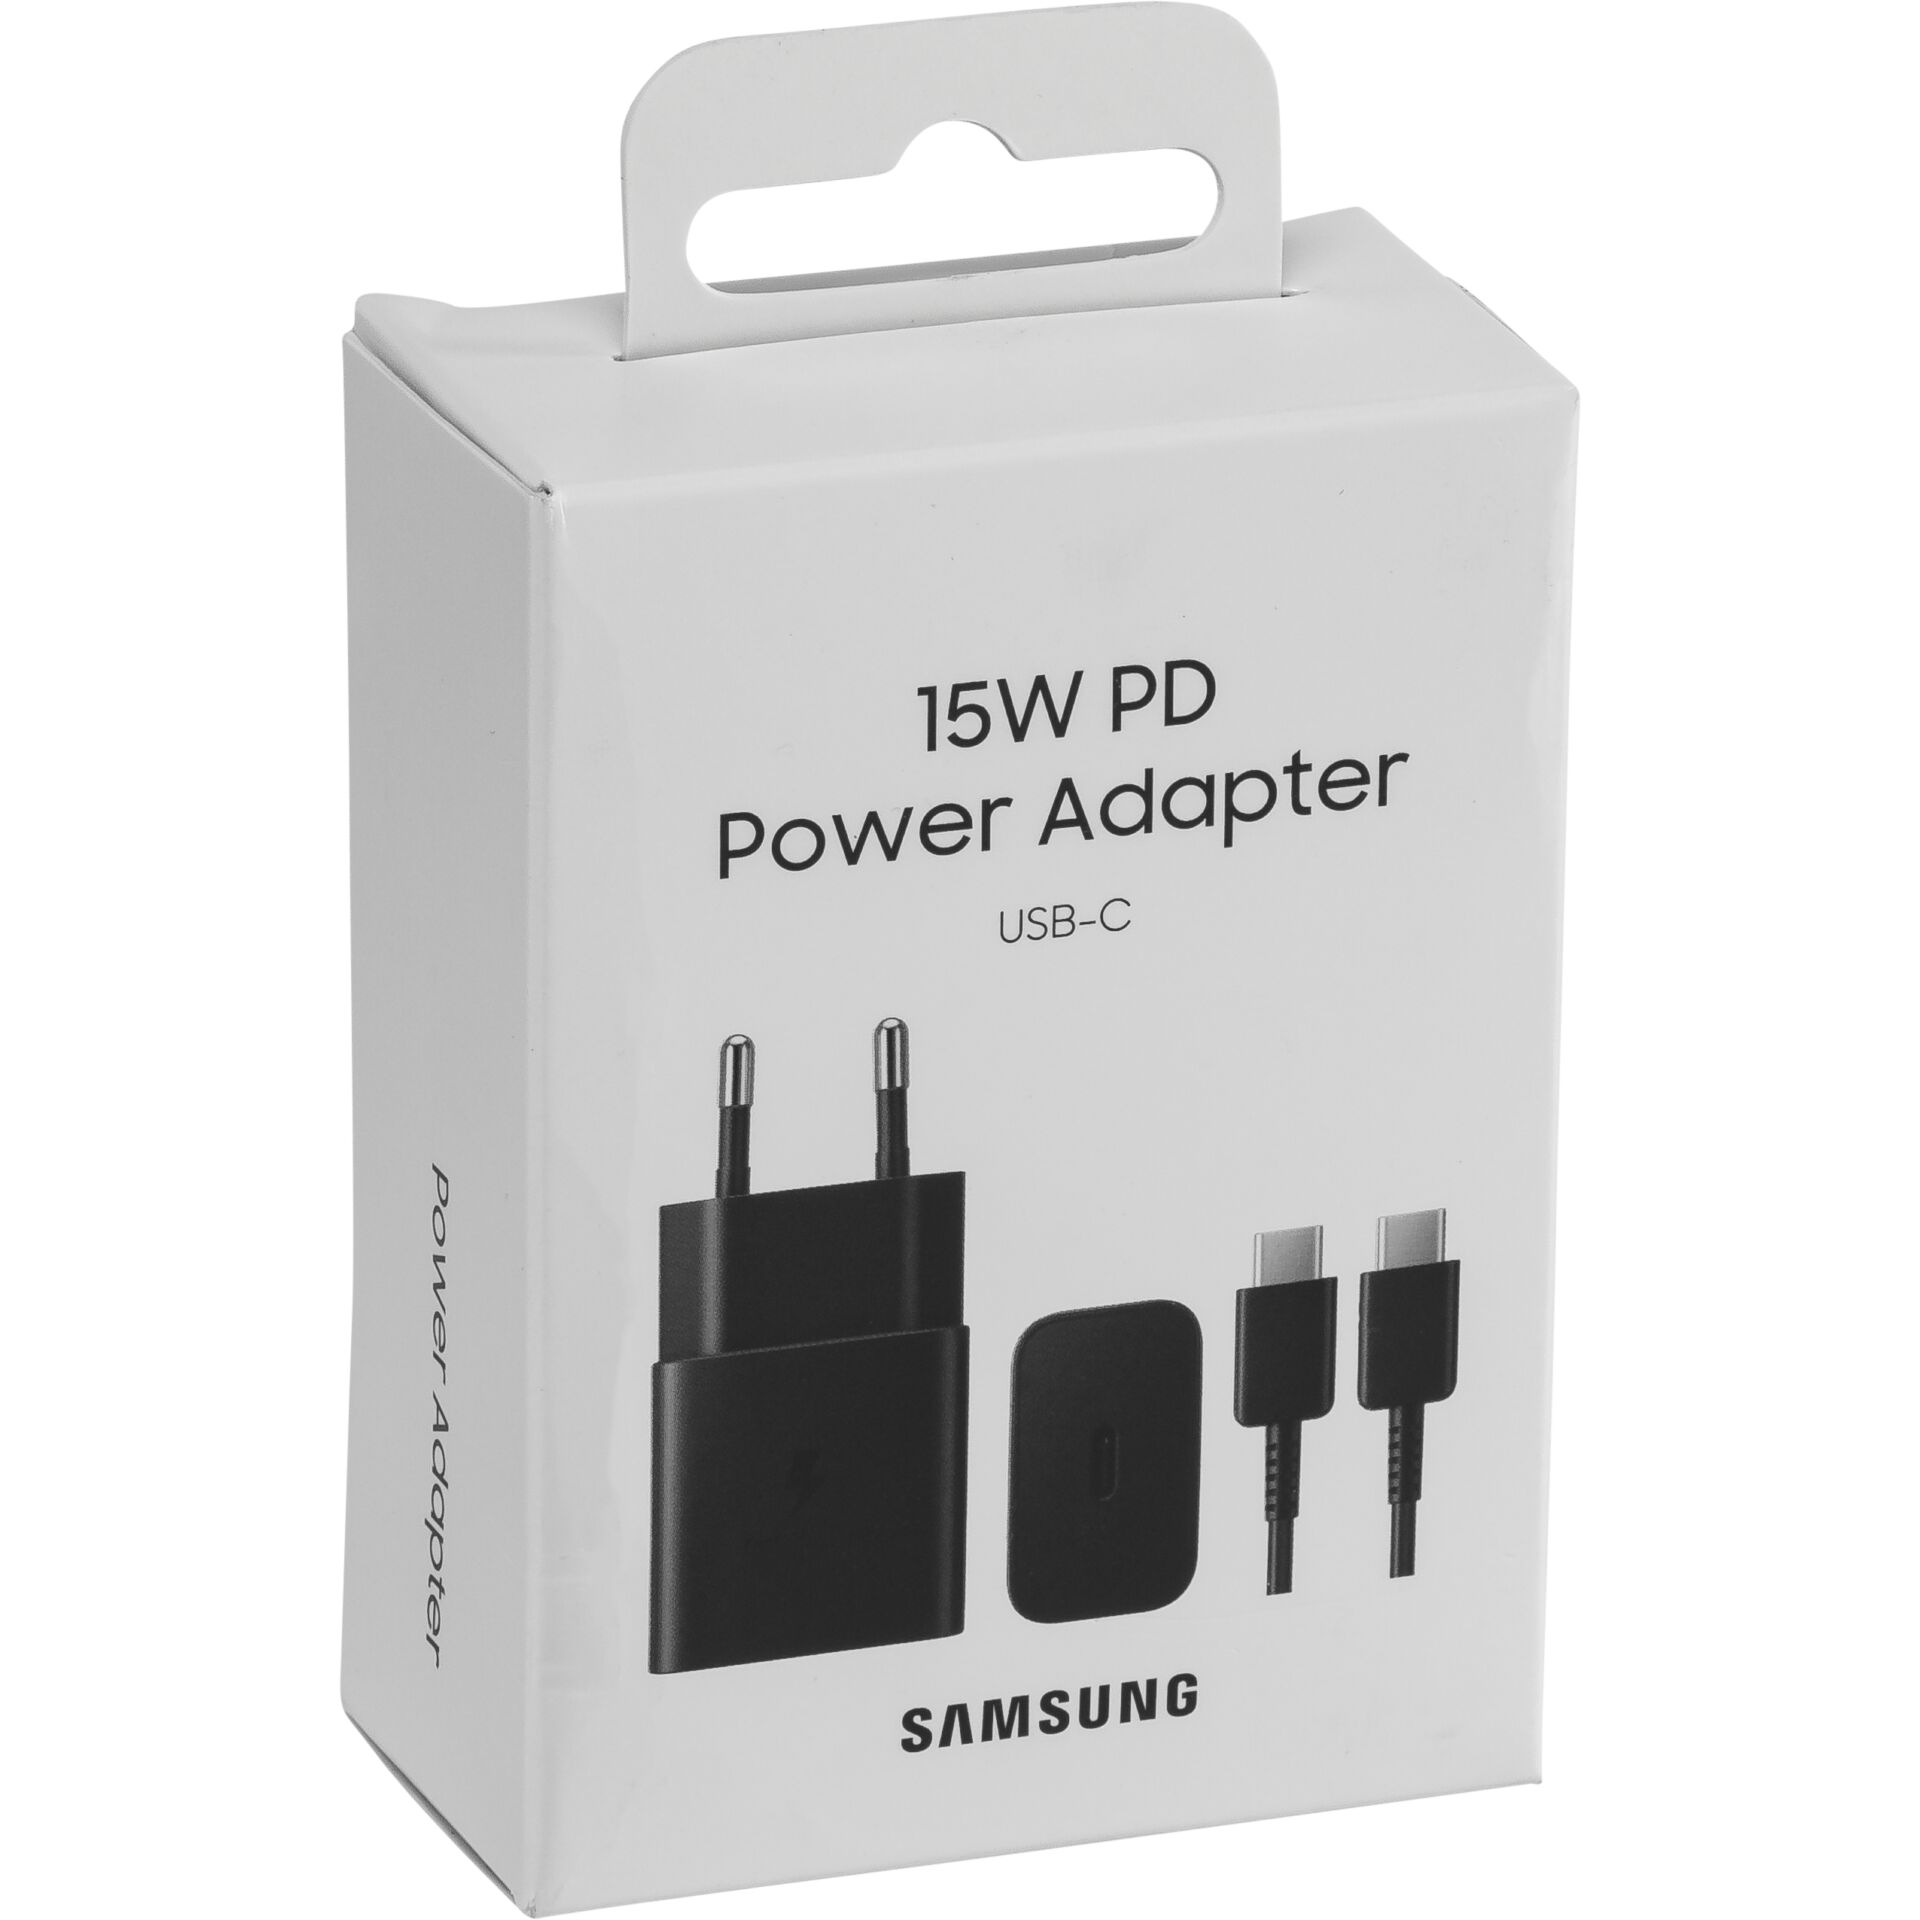 Samsung Power Adapter schwarz inkl USB günstig bei